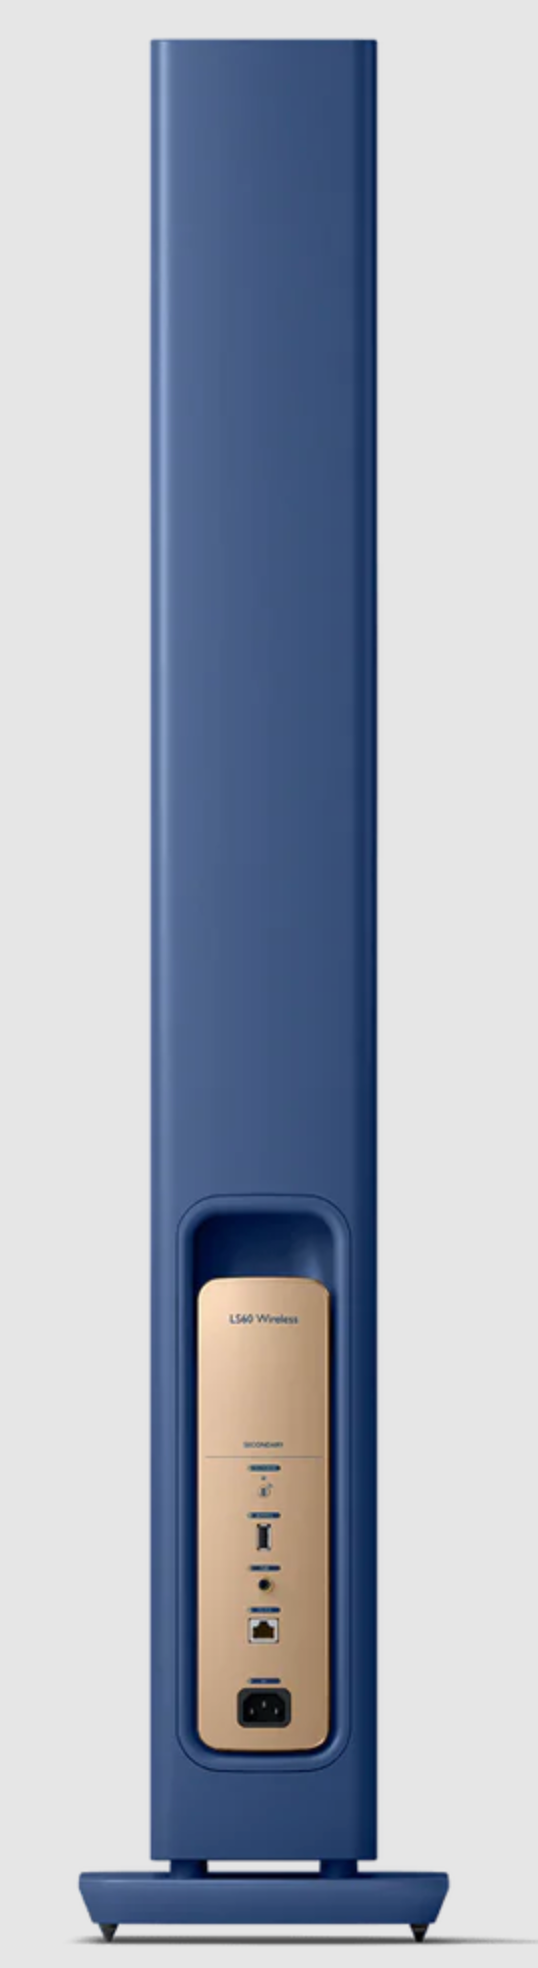 KEF LS60 Wireless Floorstanding Speakers Speakers in Royal Blue. Individual speaker back image